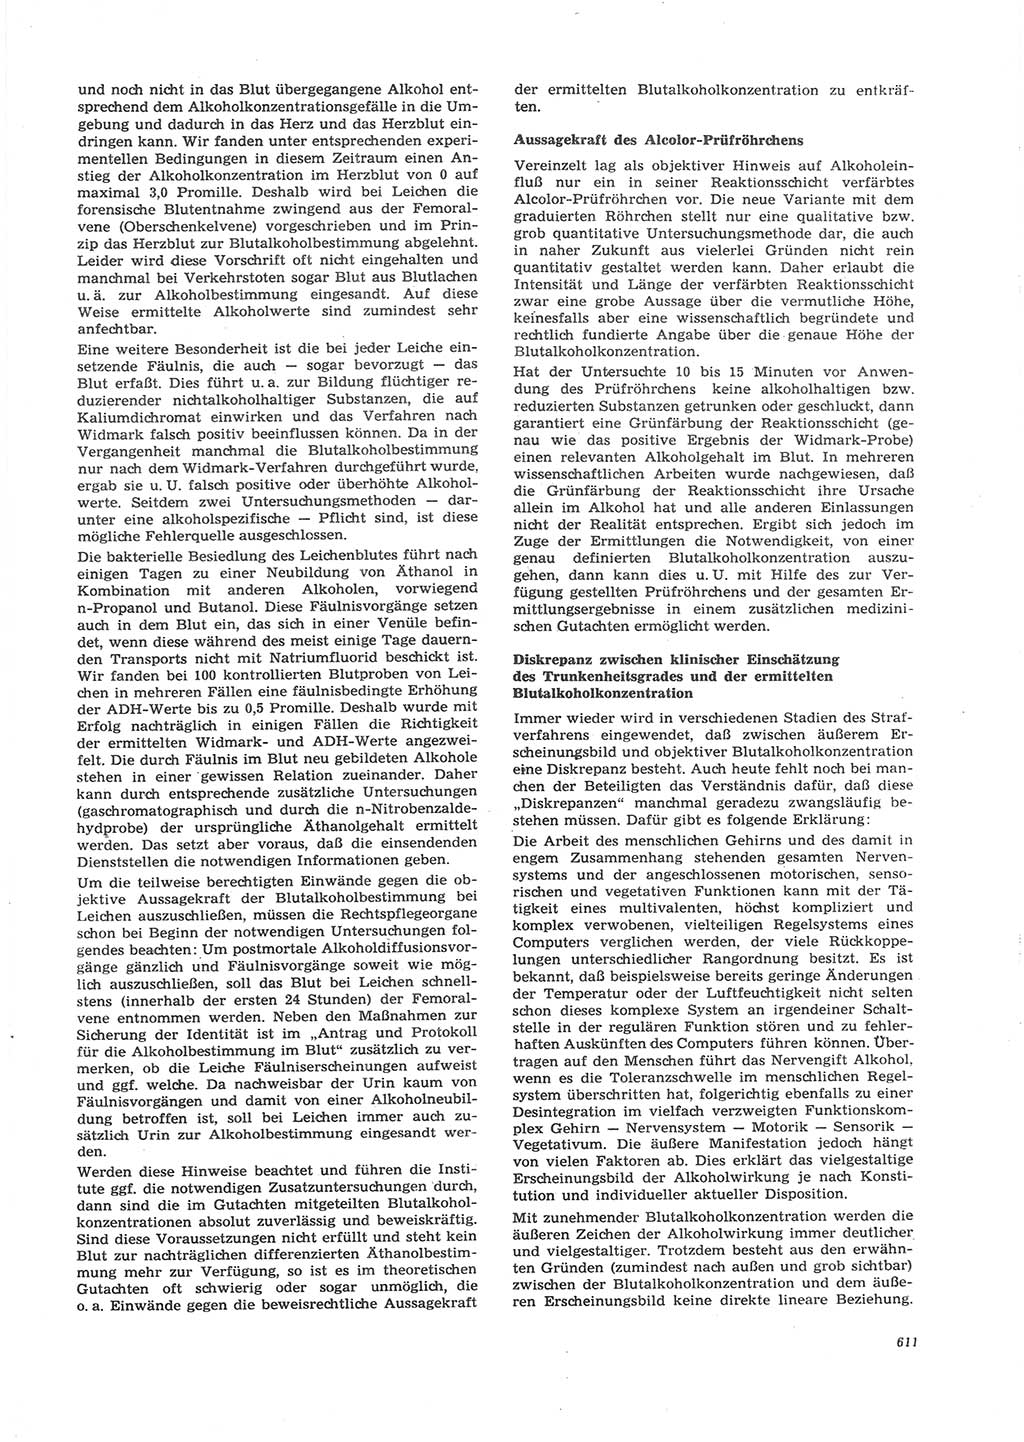 Neue Justiz (NJ), Zeitschrift für Recht und Rechtswissenschaft [Deutsche Demokratische Republik (DDR)], 26. Jahrgang 1972, Seite 611 (NJ DDR 1972, S. 611)